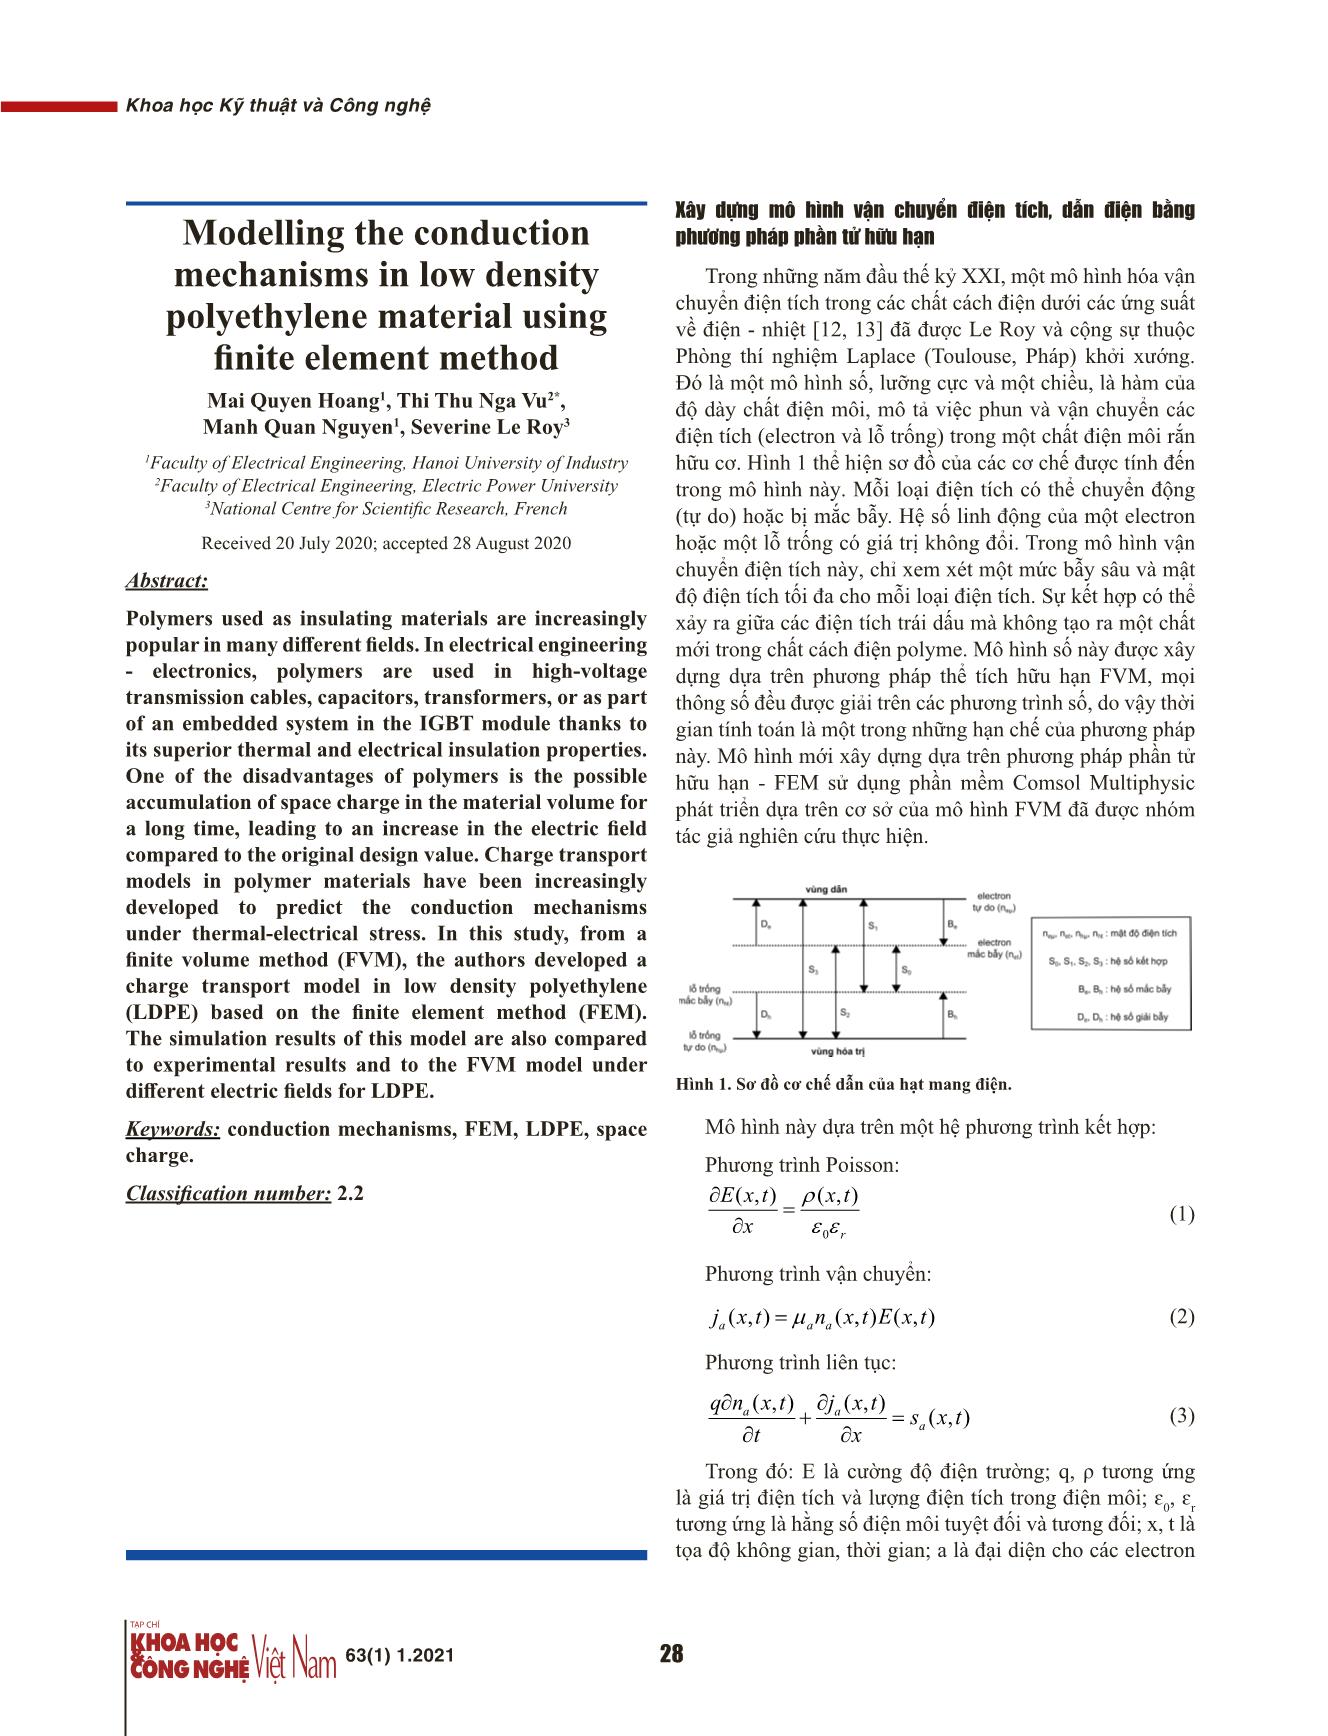 Mô hình hóa cơ chế dẫn điện của vật liệu polyetylen mật độ thấp bằng phương pháp phần tử hữu hạn trang 2